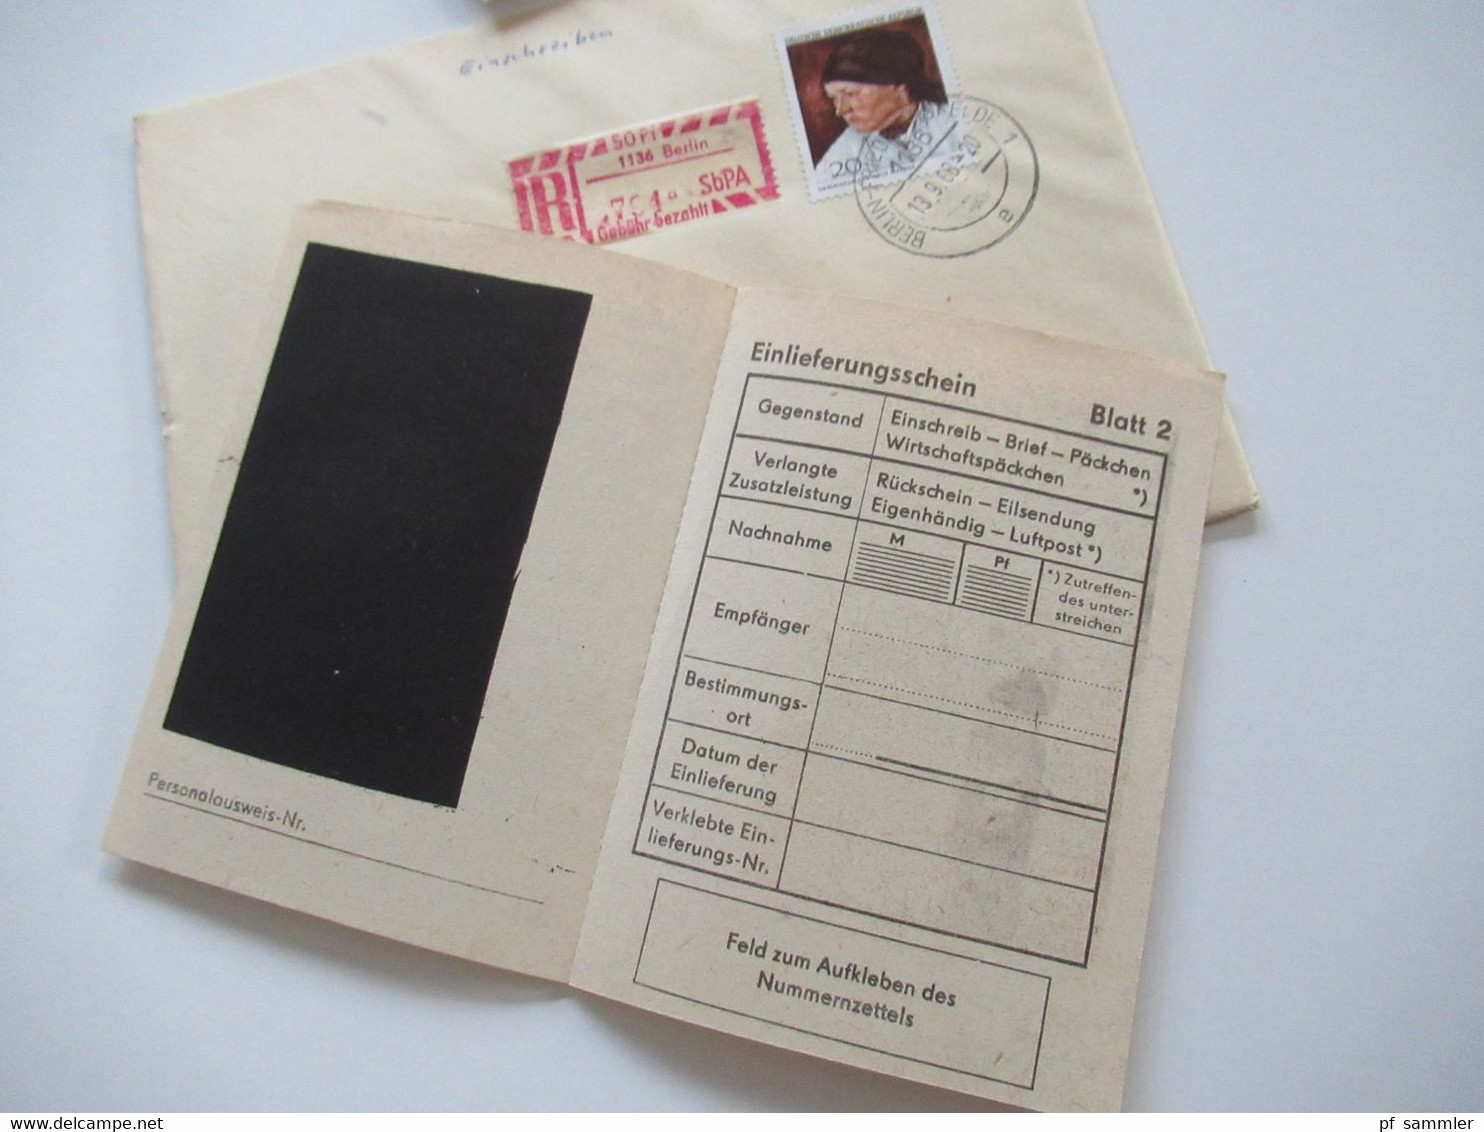 DDR 1968 Einschreiben / Reko Belege SbPA (Selbstbucher Postamt) Berlin Einschreibemarke Nr.2 insgesamt 13 Belege